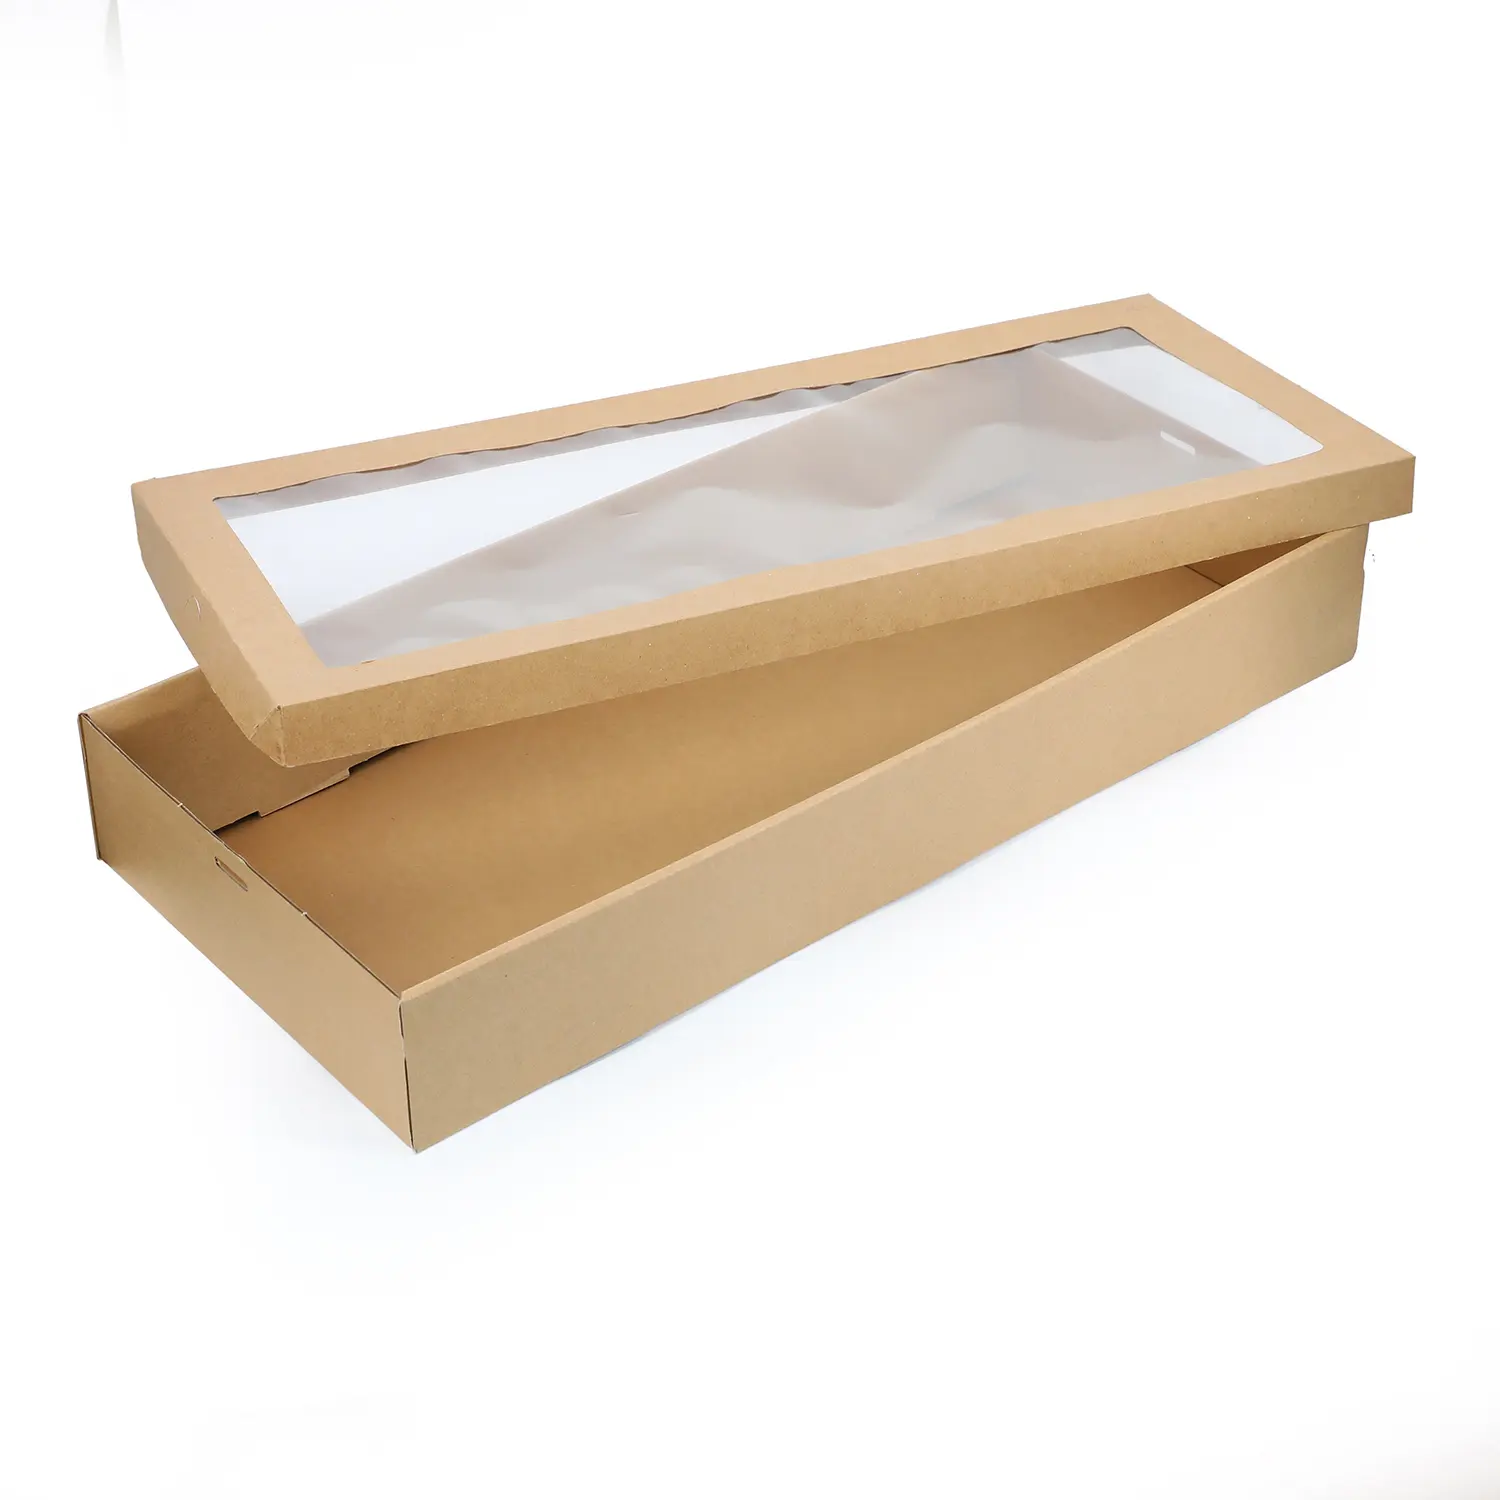 กล่องกระดาษลูกฟูกสำหรับใส่อาหารกลางวันมีช่องใส่อาหารกล่องกระดาษลูกฟูกมีช่องใส่อาหารได้เยอะ